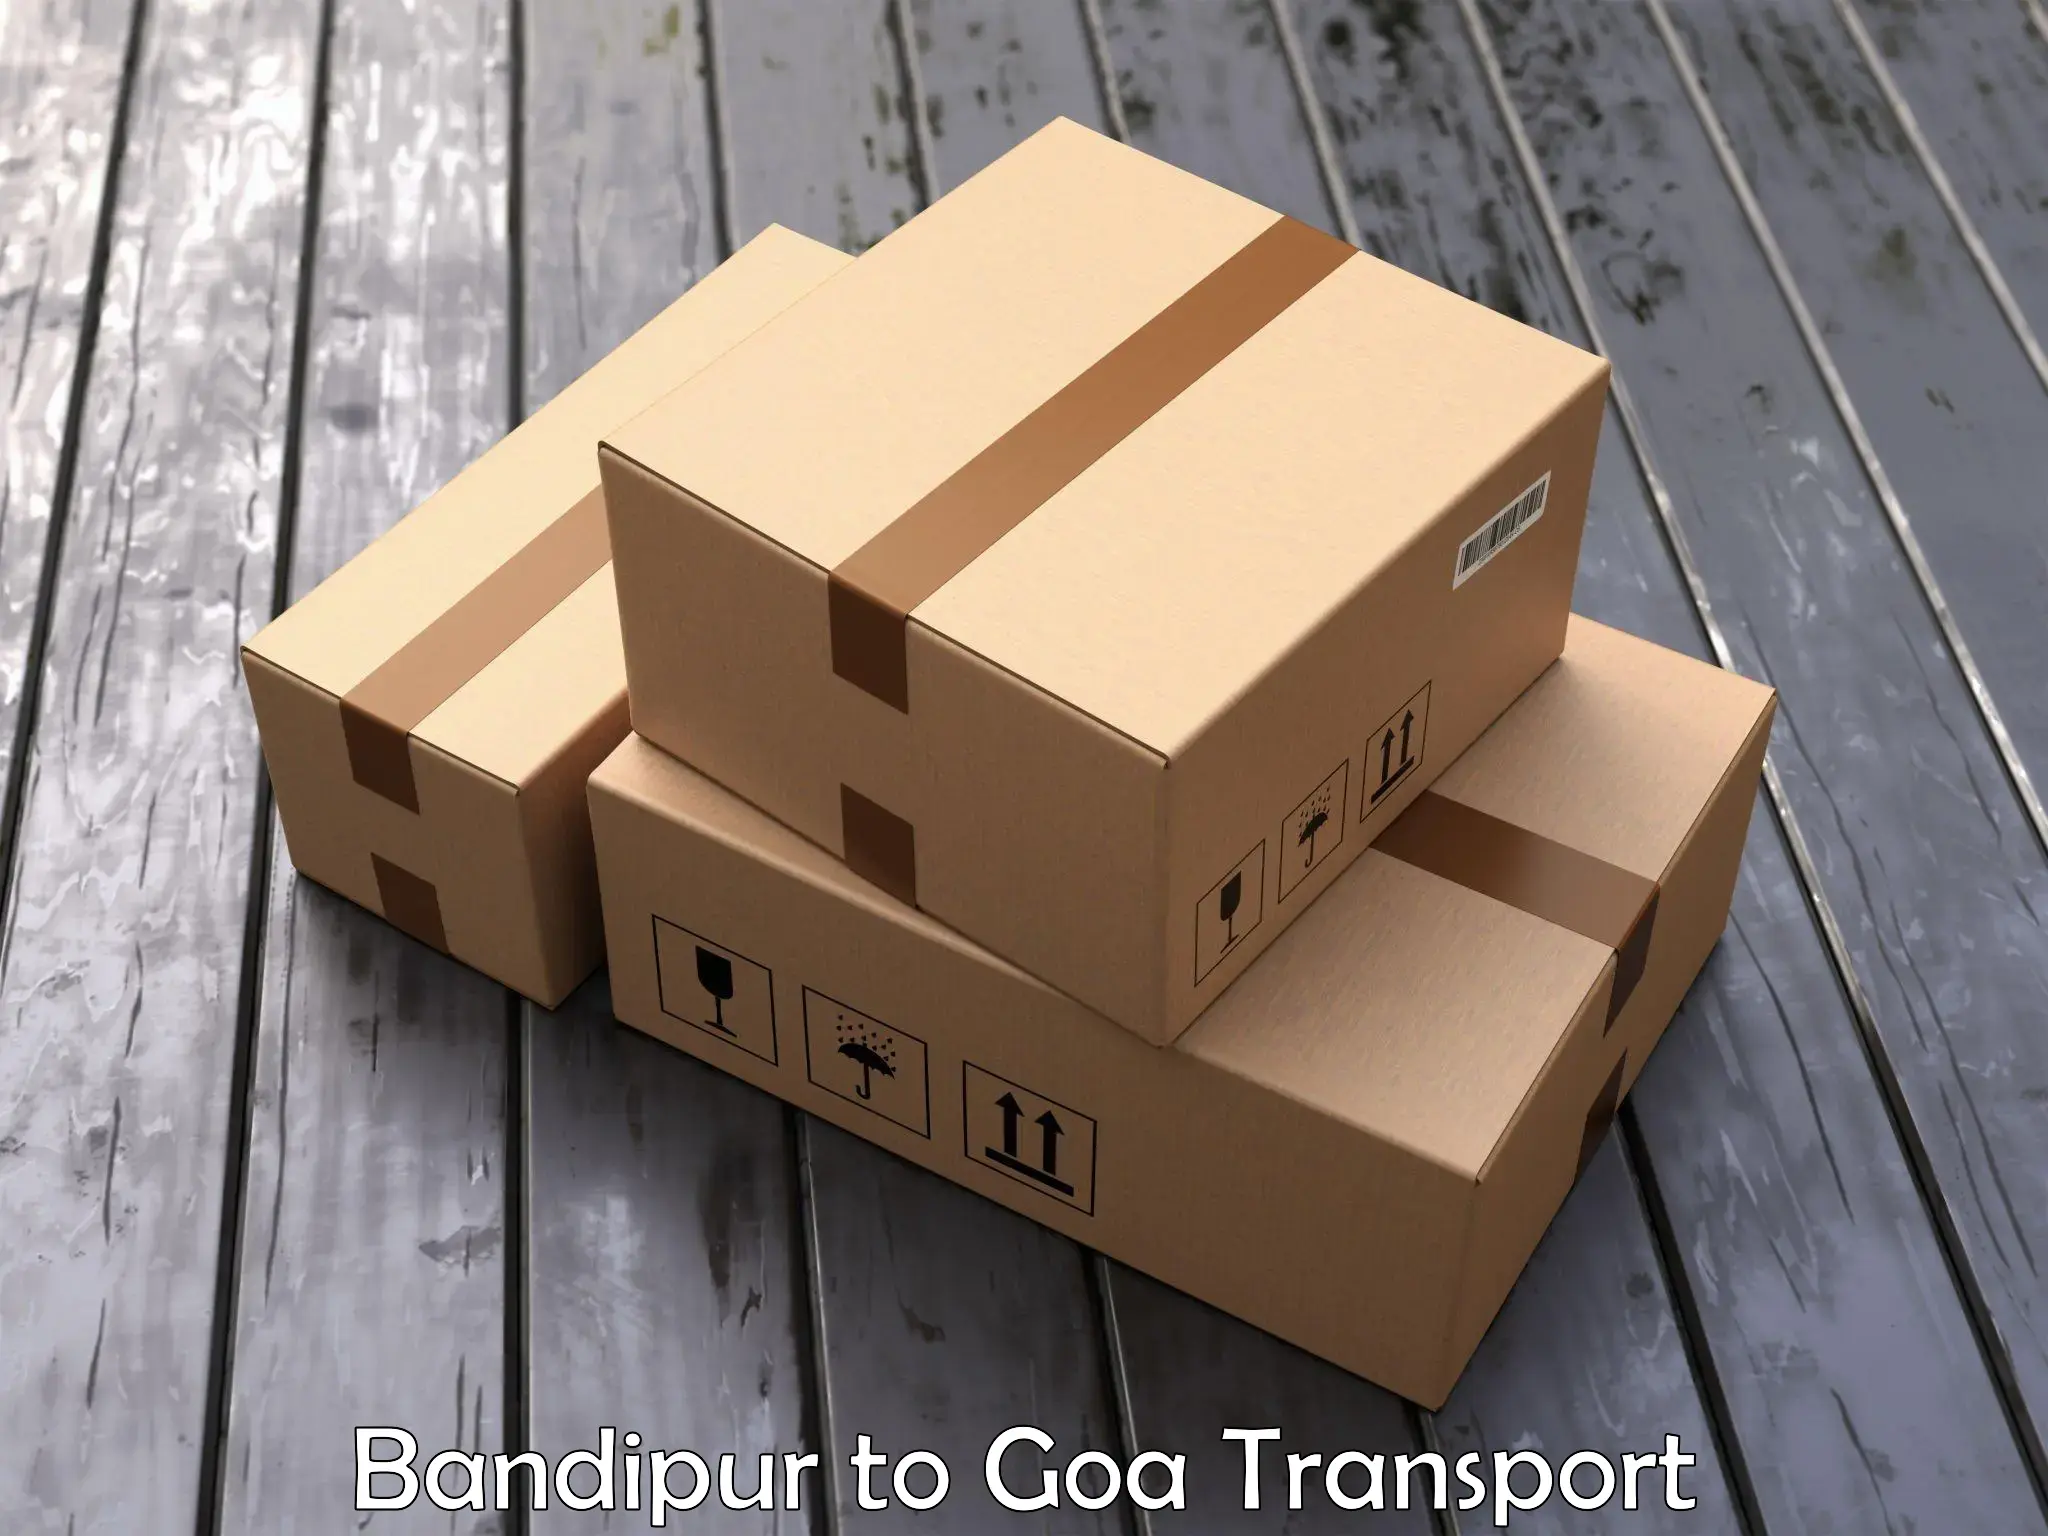 Two wheeler parcel service Bandipur to Panjim